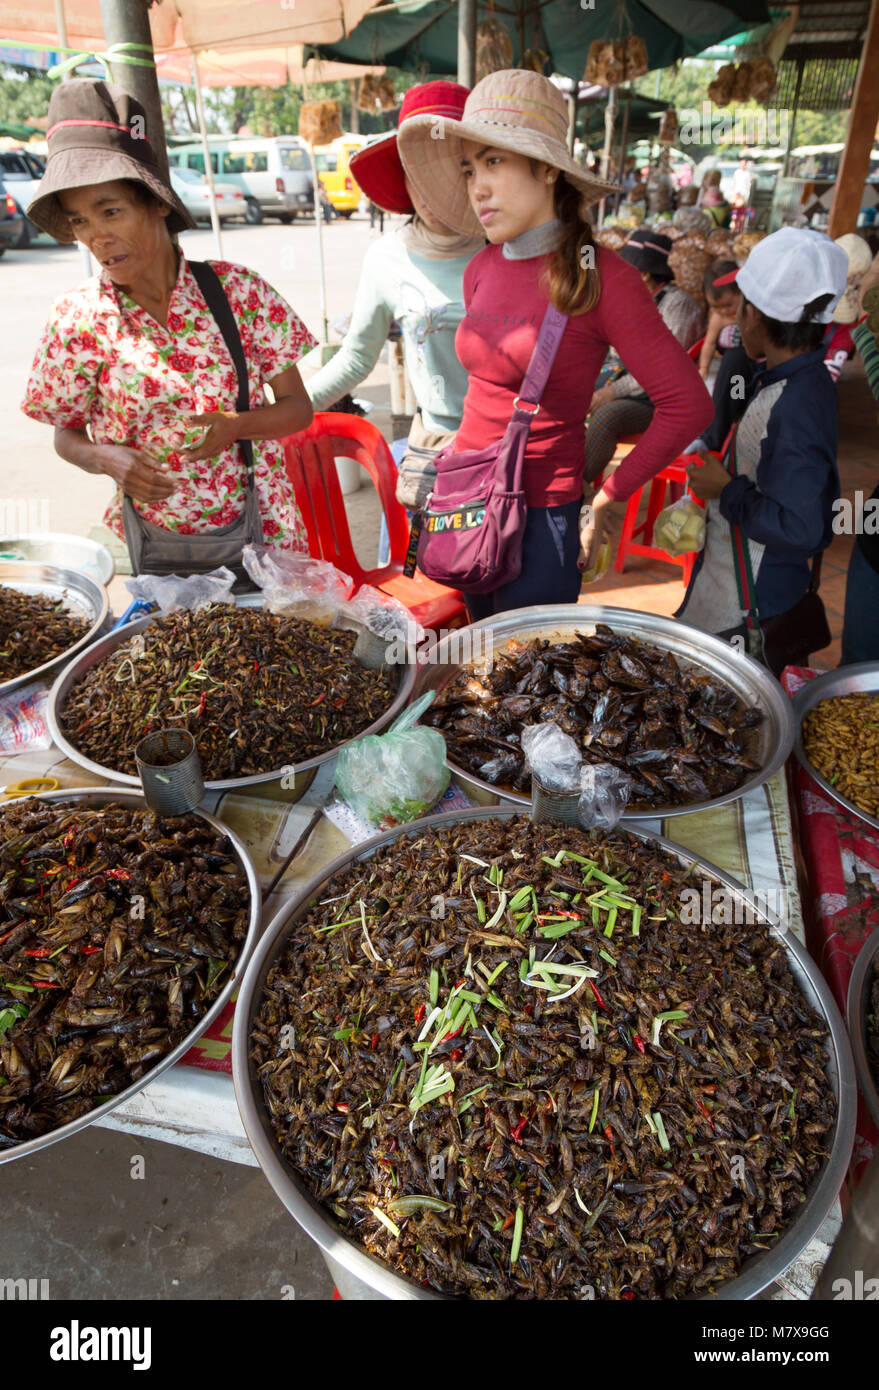 Standbesitzer Verkauf von Insekten für Lebensmittel, Skuon spider Markt oder Insekt Markt, Skuon, Kambodscha Asien Stockfoto